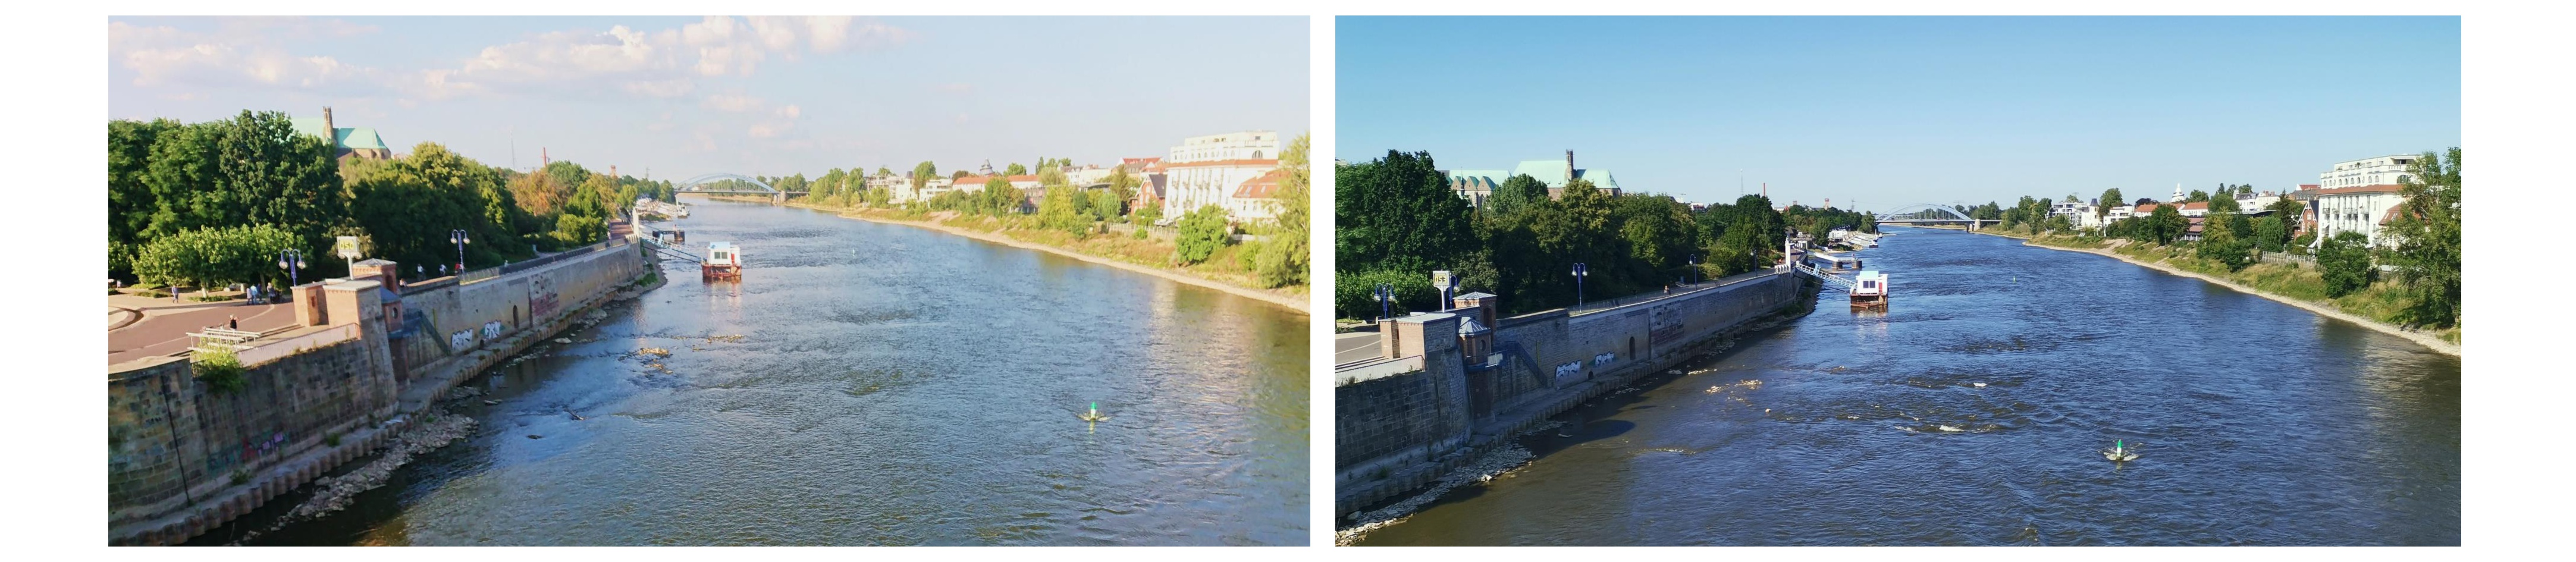 Blick von der Strombrücke in Magdeburg flussabwärts. Links am 09.08.2018 bei einem Wasserstand von 50 cm, rechts am 26.07.2019 bei einem Wasserstand von 53 cm. Quelle: Daniel Graeber (UFZ)